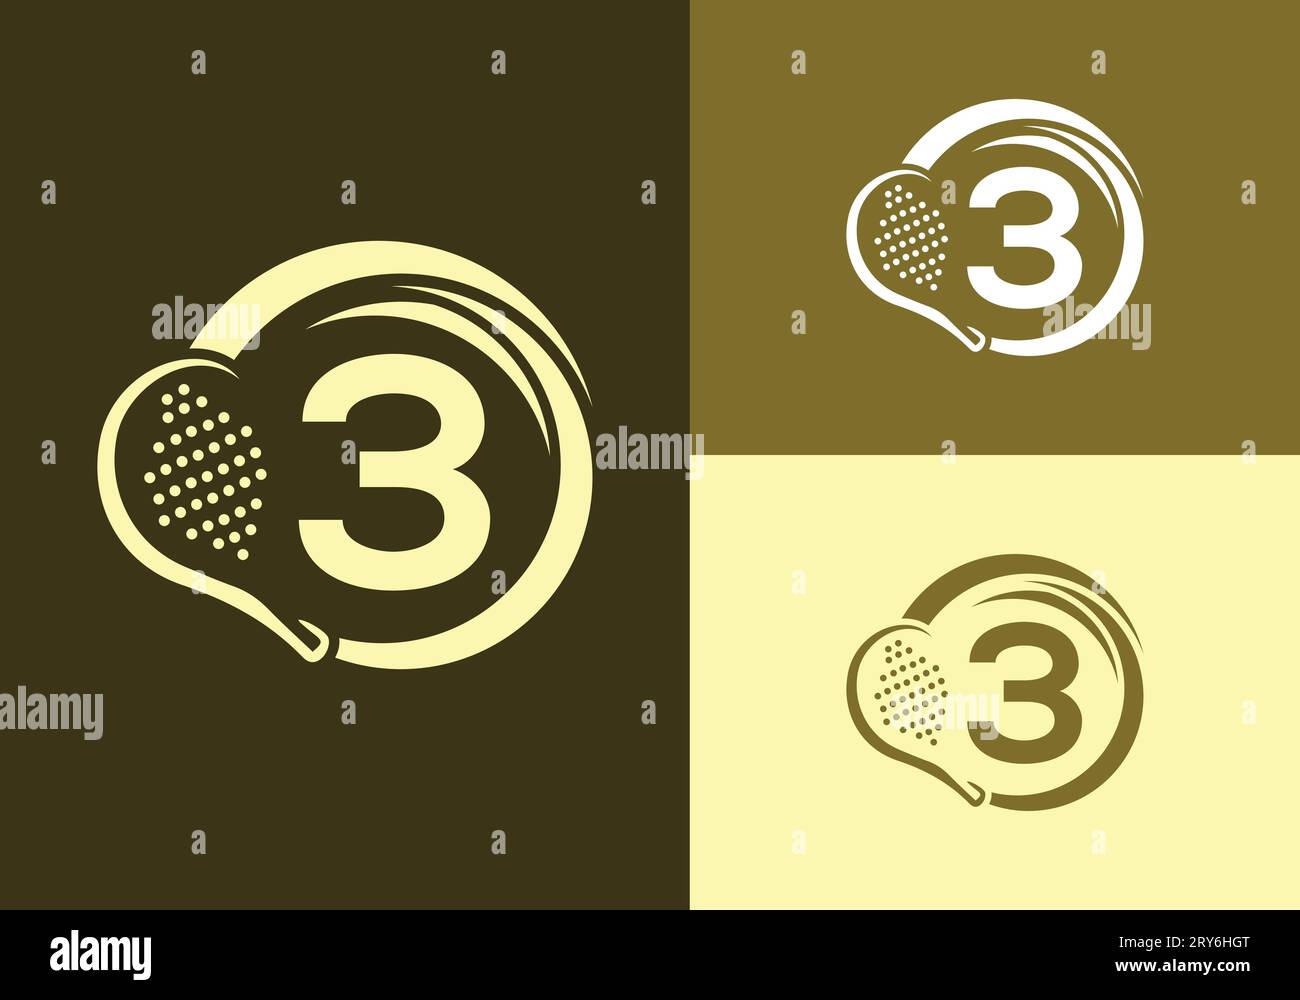 Brief 3 Mit Padel Racket Logo Design Vektor Vorlage. Beach Table Tennis Club Symbol. Geschäfts- und Unternehmensidentität Stock Vektor